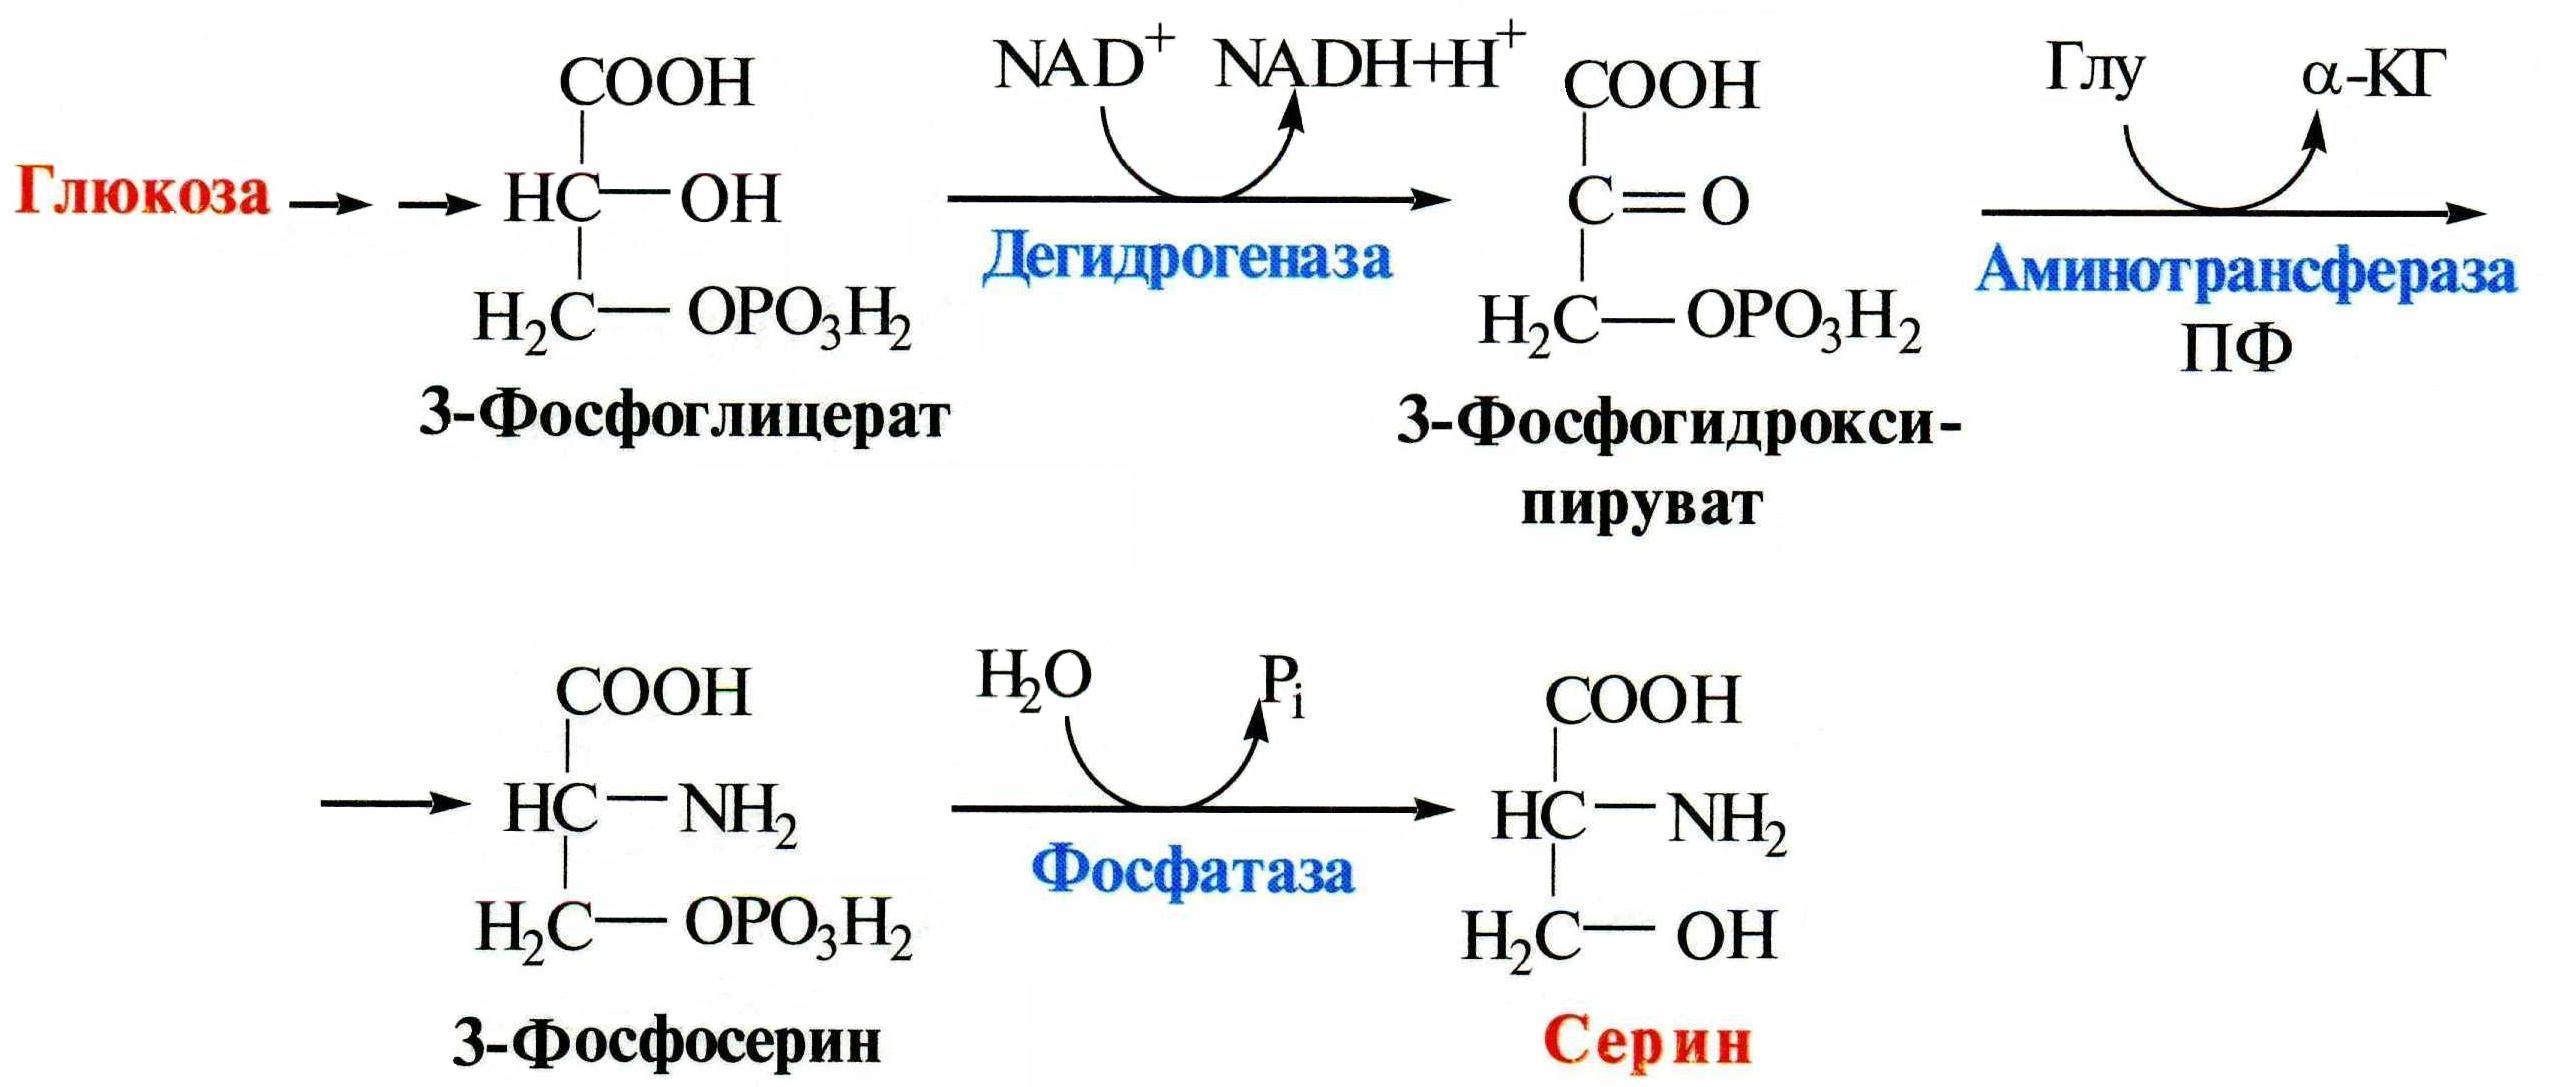 Напишите реакцию глицина. Синтез Серина из Глюкозы. Процесс образования Серина из Глюкозы. Схема синтеза Серина. Схема синтеза Серина из Глюкозы.